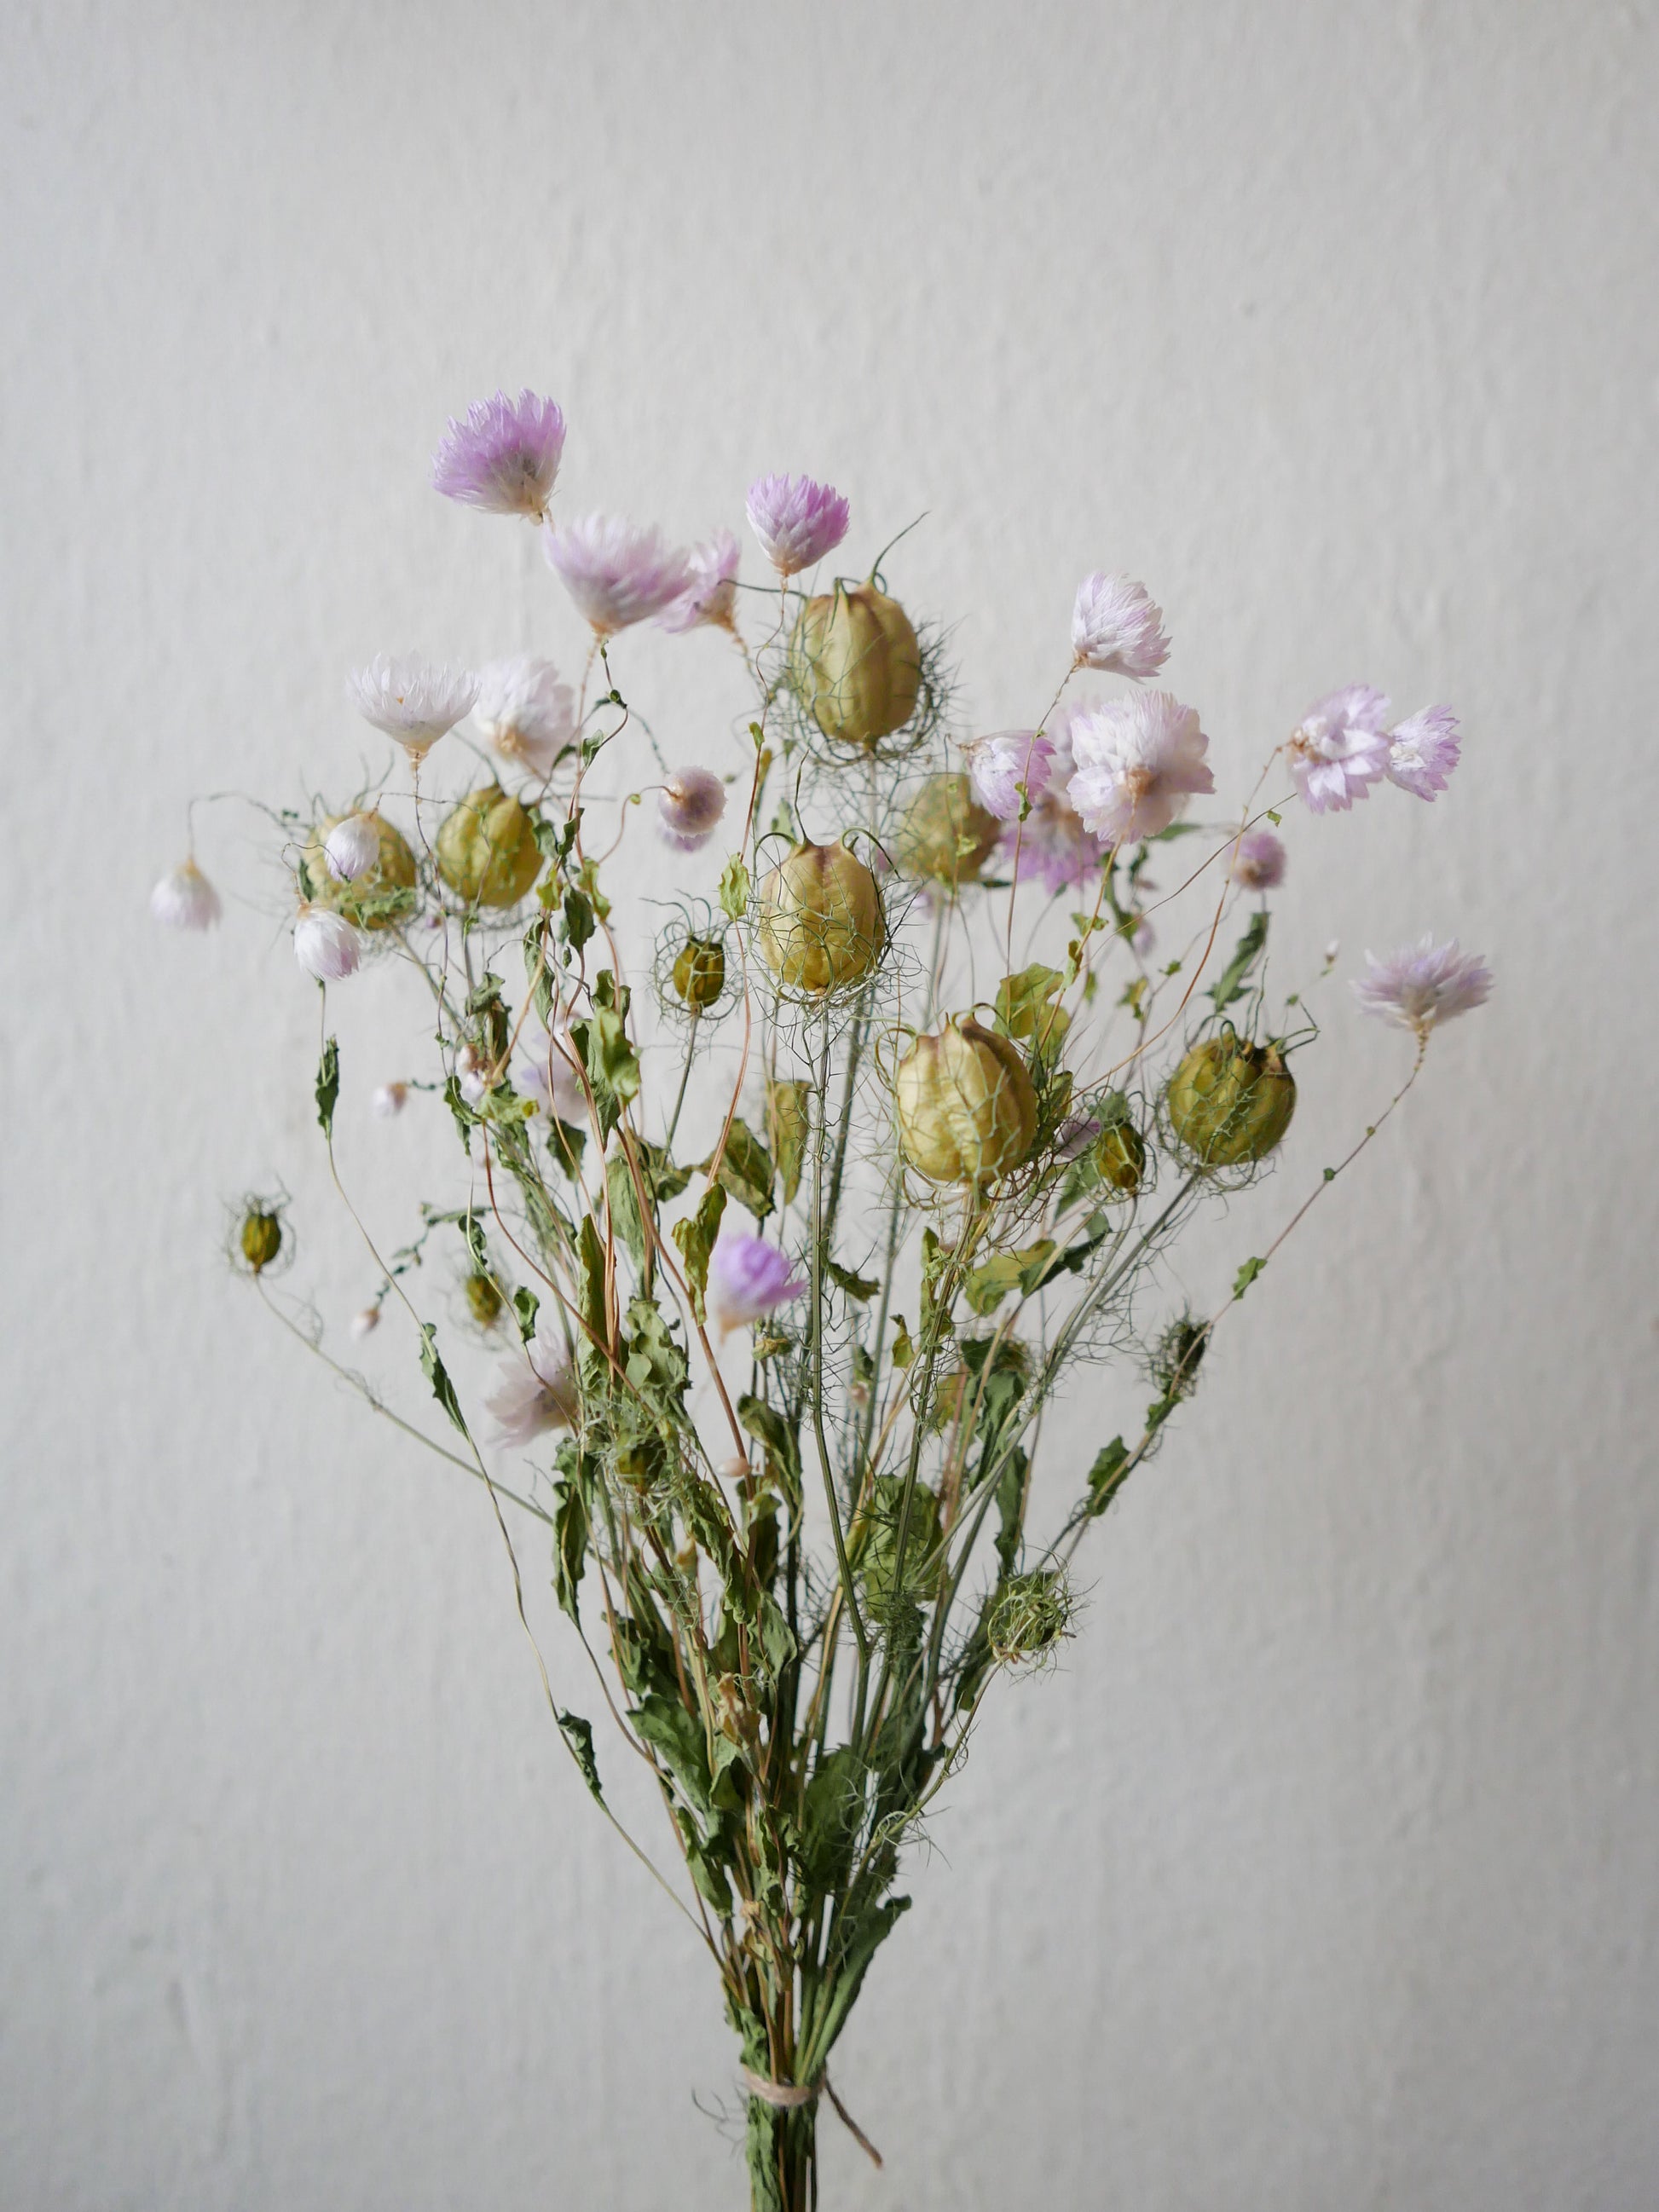 Trockenblumen nigella slowflowers leipzig sonnenflügel